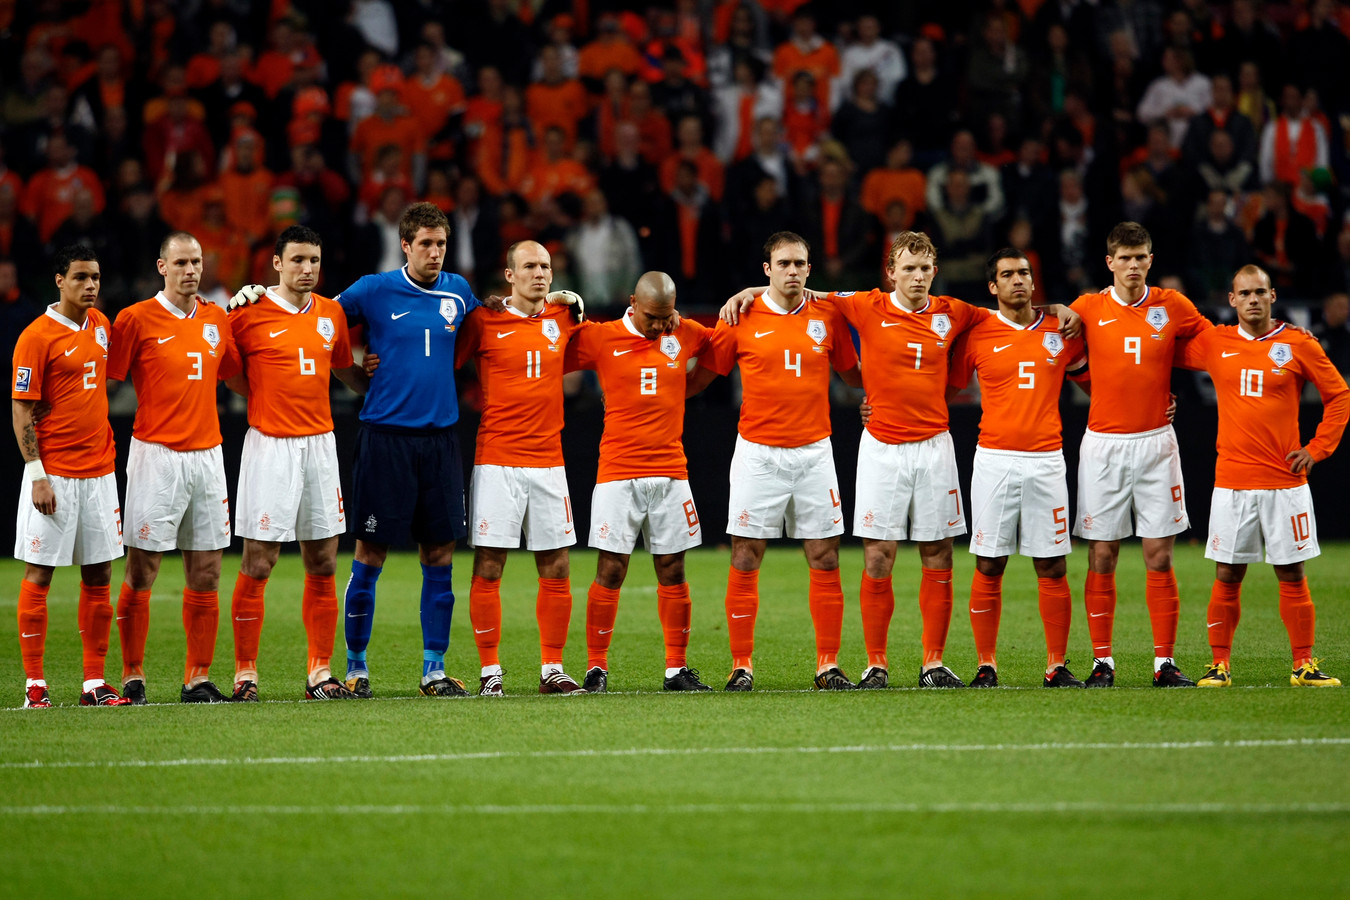 Een minuut stilte voor Oranje - Macedonië voor de slachtoffers van de stadionramp in Ivoorkust in 2009. Negentien mensen kwamen daarbij om het leven.